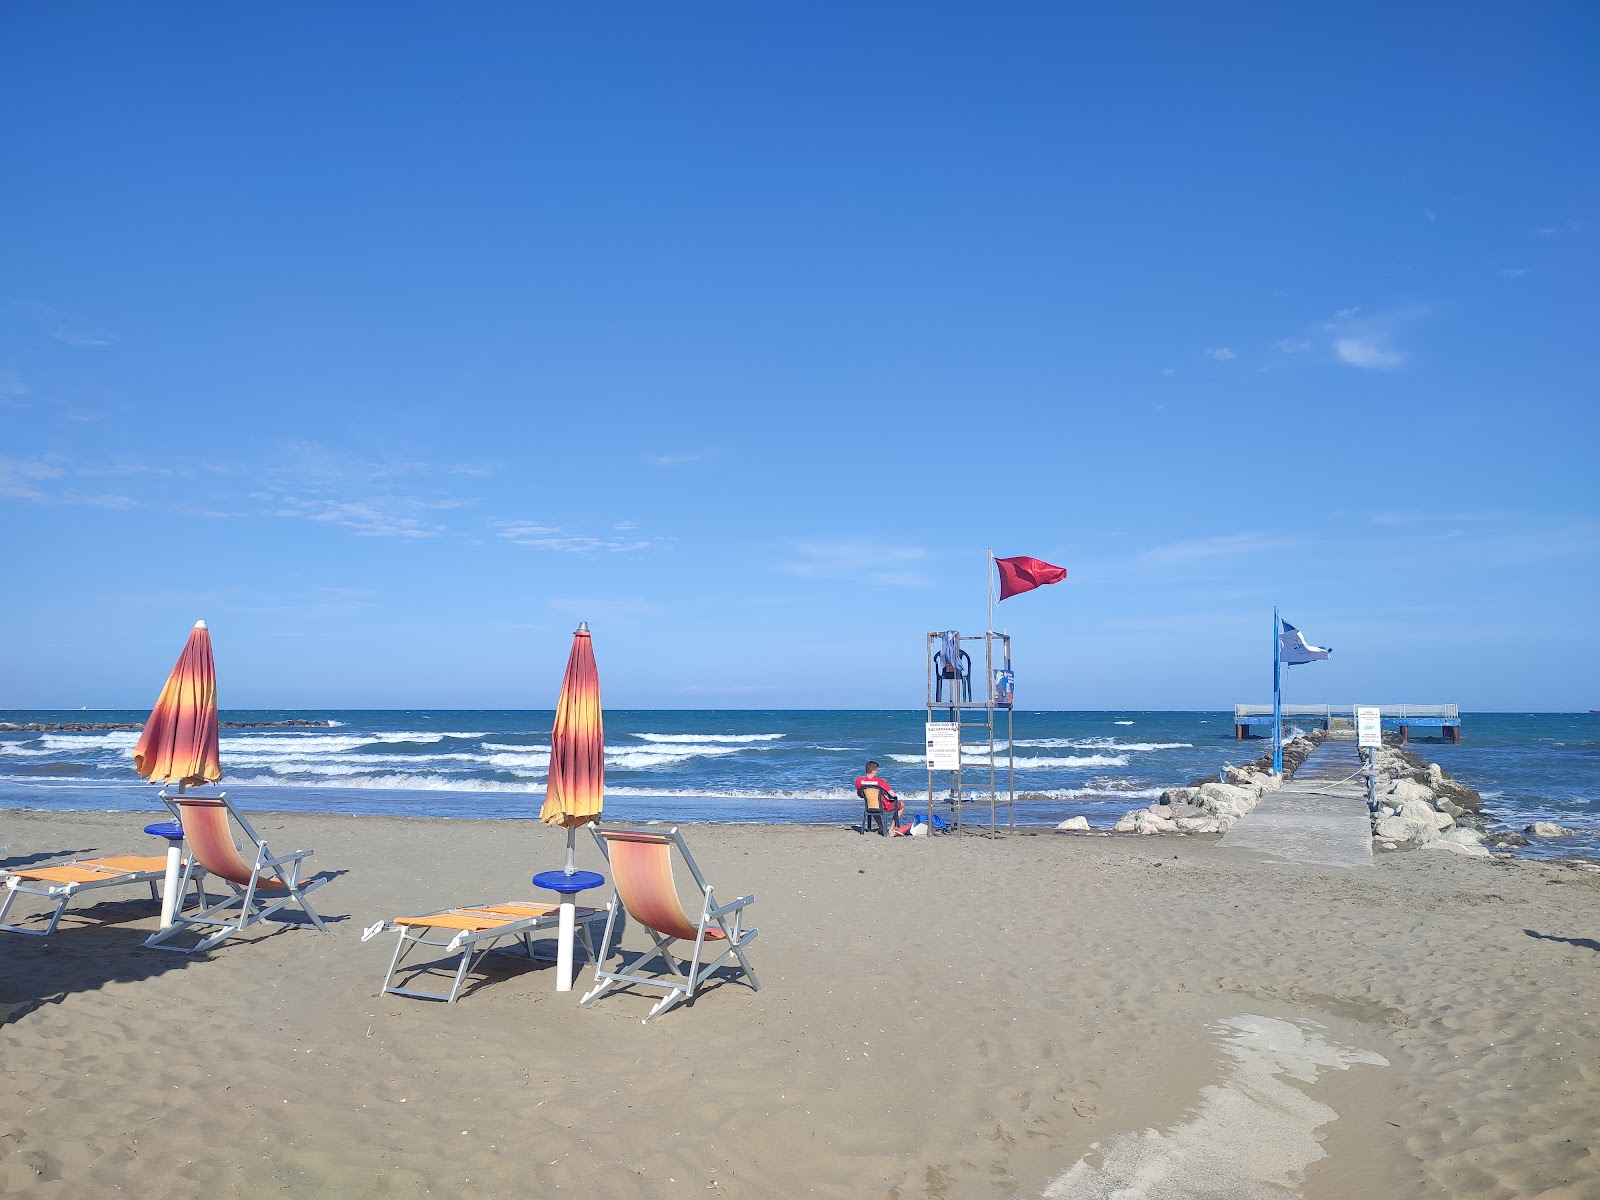 Foto de Murazzi Spiaggia Libera con recta y larga